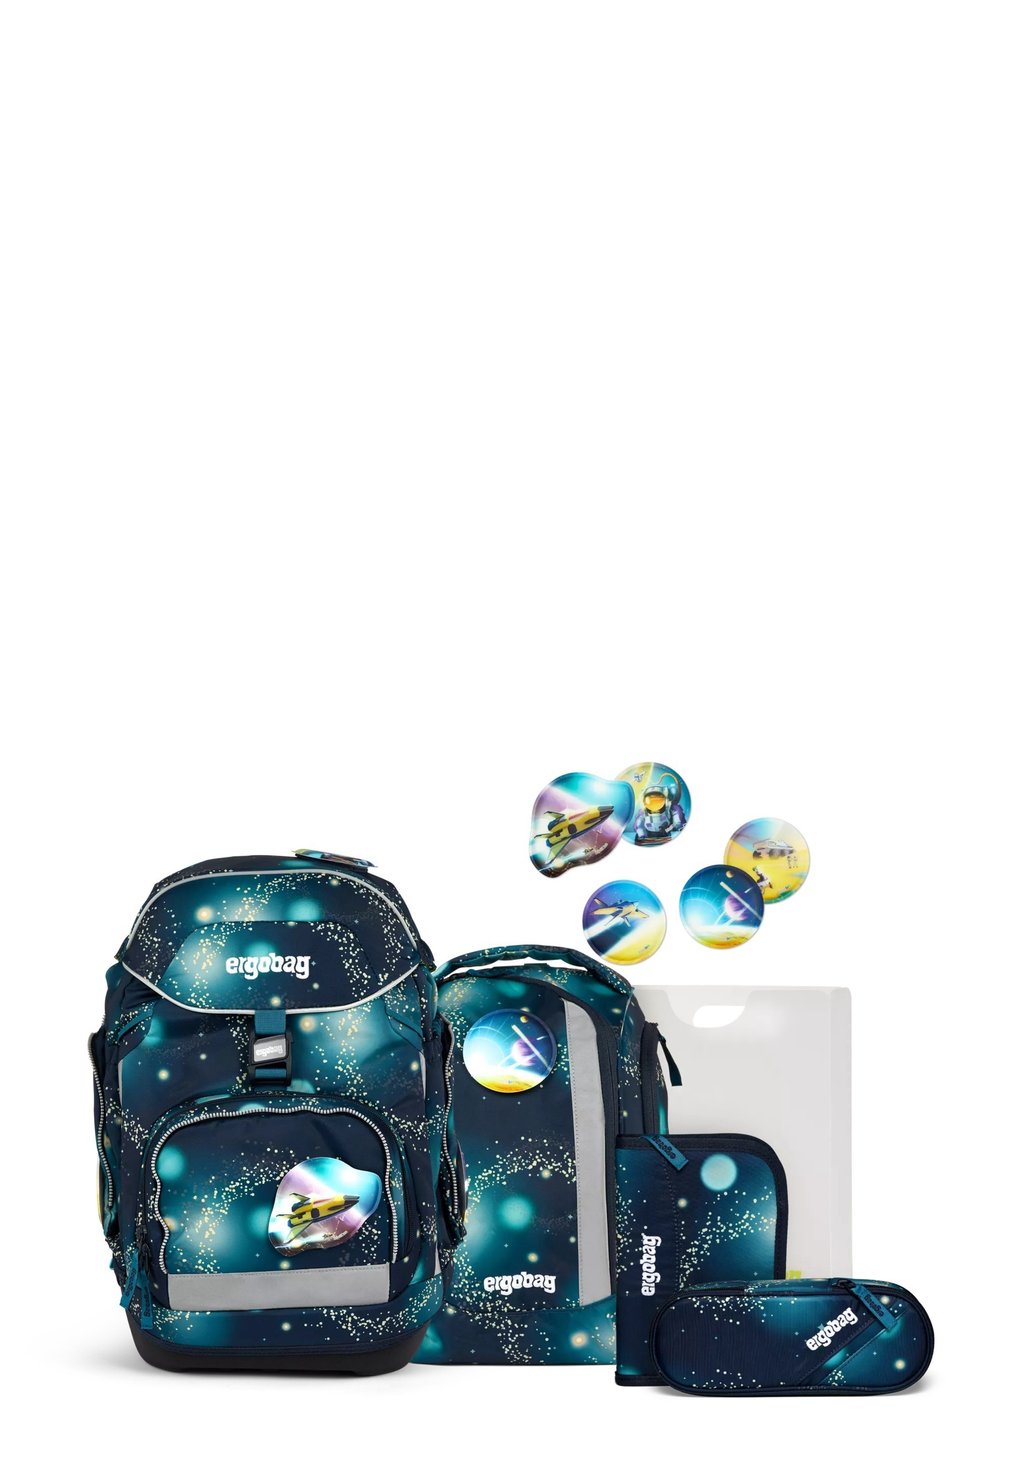 Комплект школьных сумок LUMI-EDITION Ergobag, цвет dunkelblau